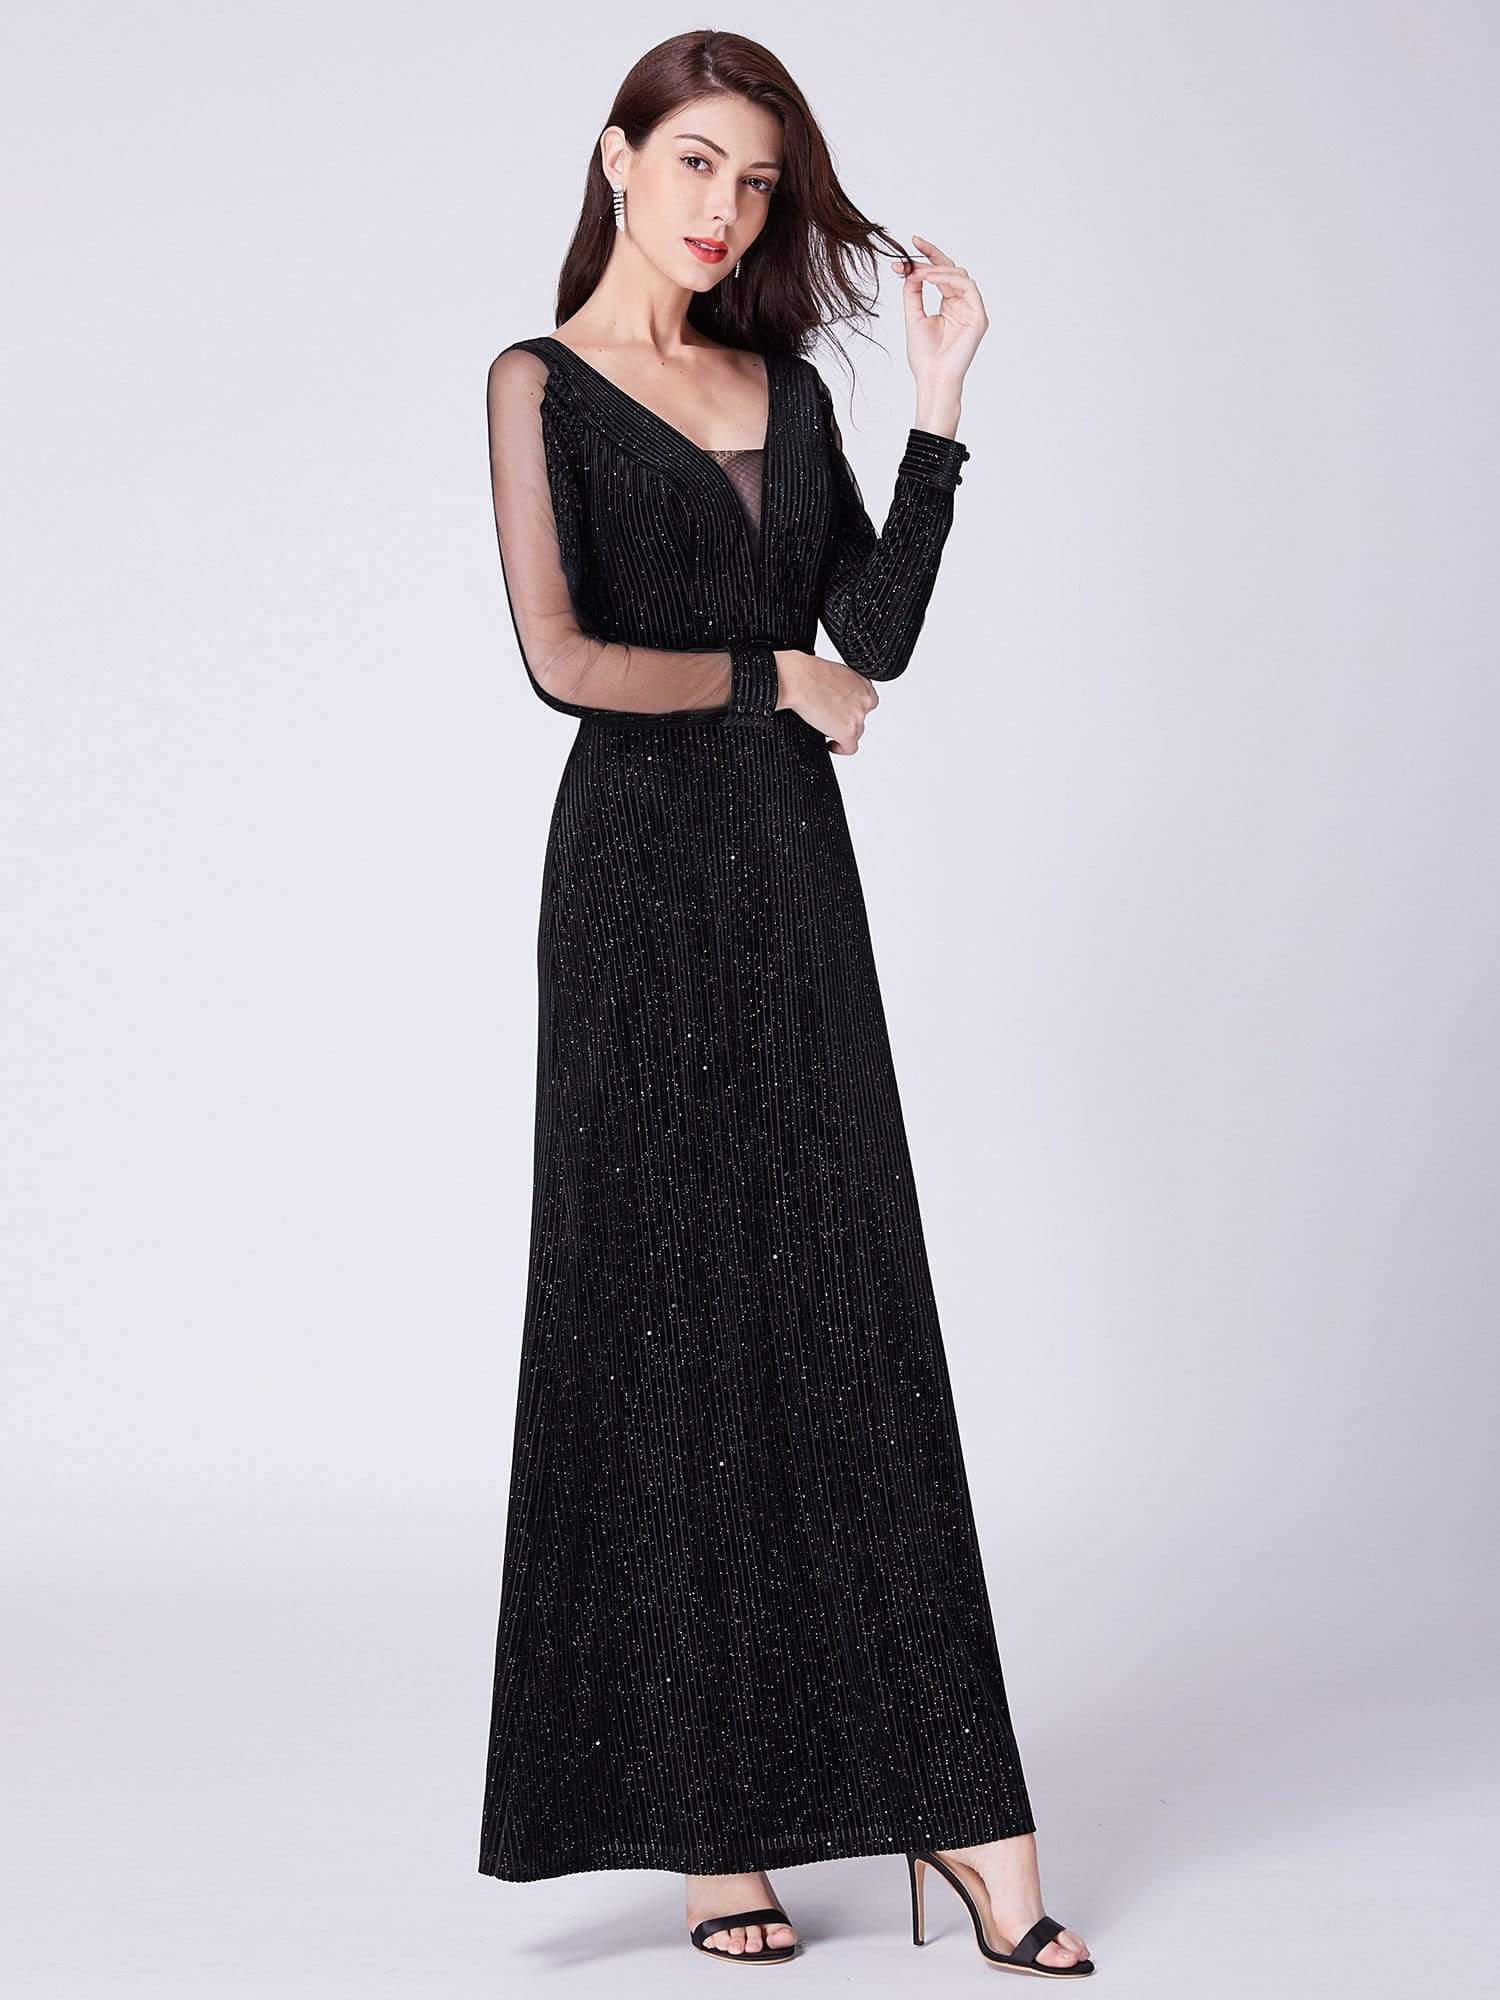 Shimmery Velvet Evening Dresses for Women with Long Sleeves